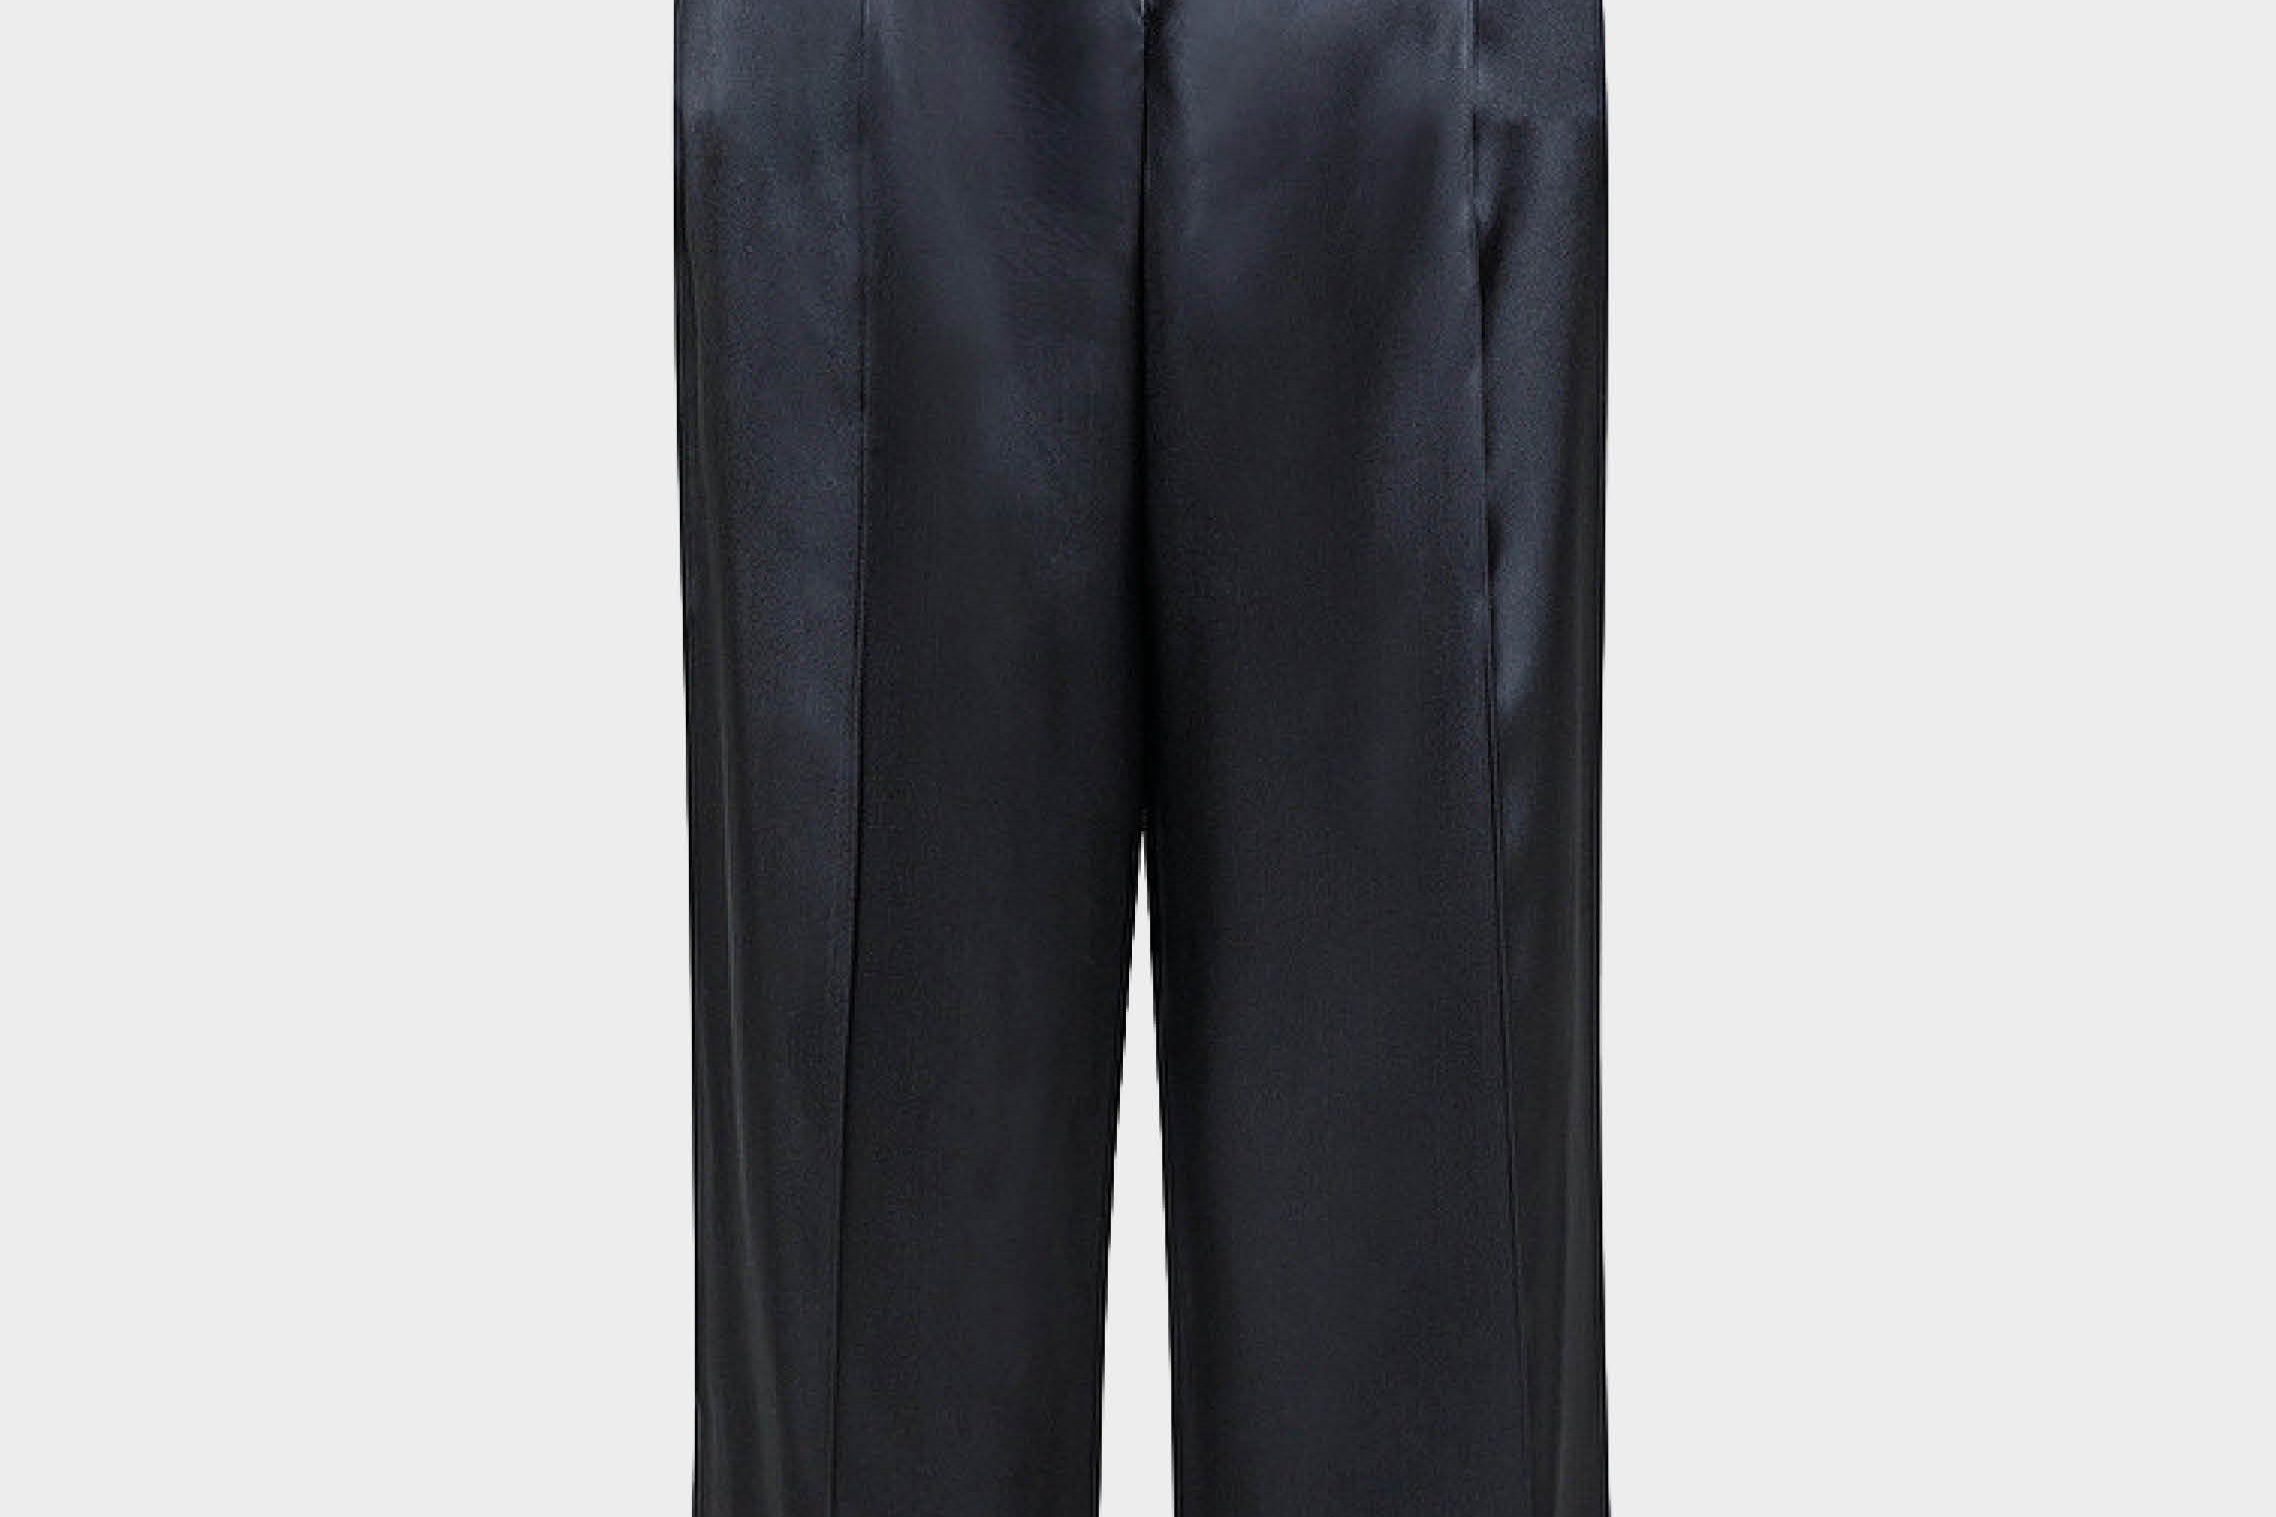 Pantalón de traje negro de Forte Forte. Tejido 100% de satén. Goma elástica en la parte trasera y bolsillos laterales. Envíos gratuitos a partir de 200€. Devoluciones fáciles.